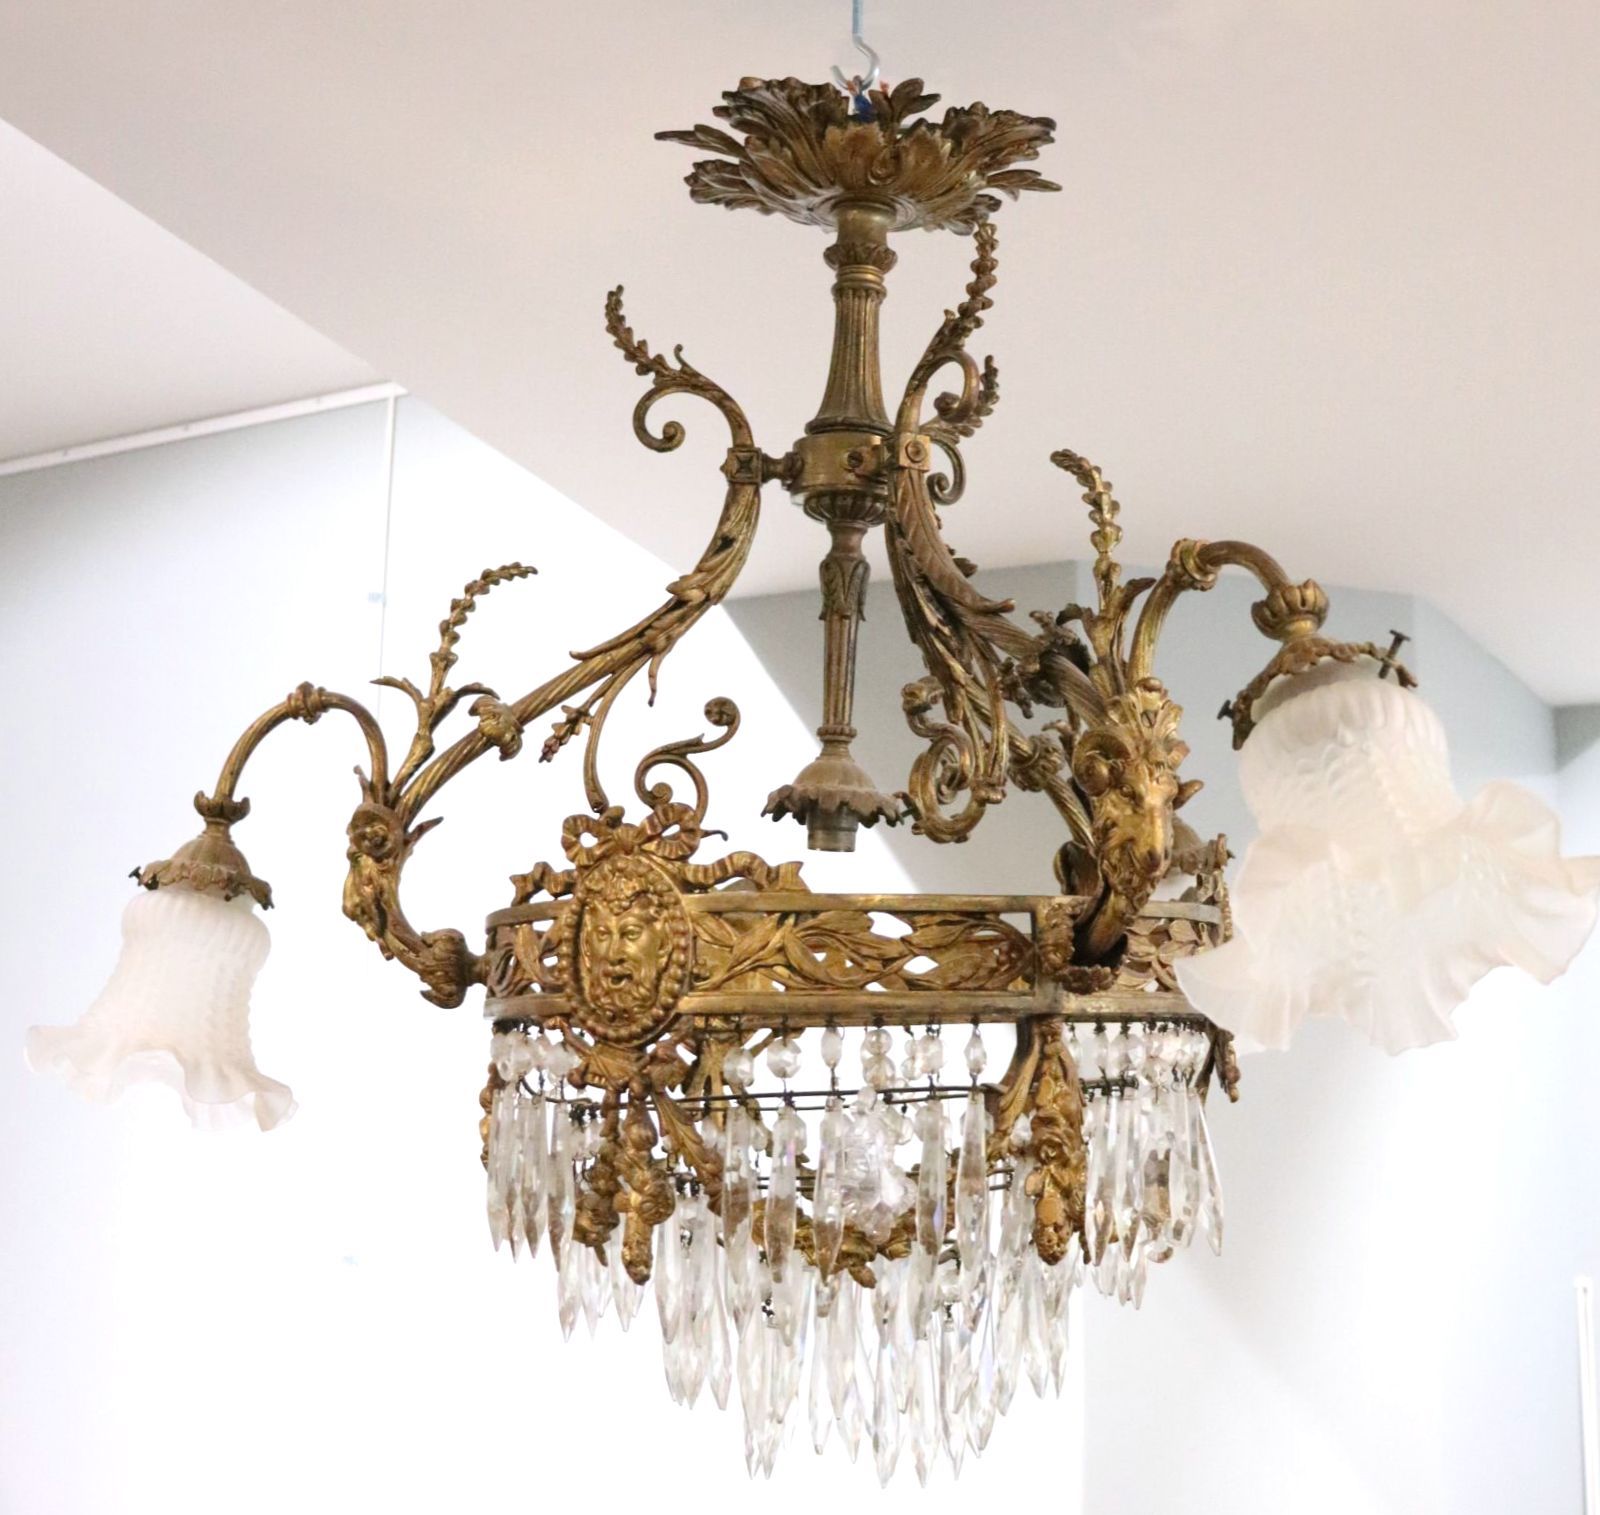 Null 一盏三灯兰花吊灯，吊灯上装饰着长胡子的面具和玫瑰花环。
19世纪。
高_71厘米